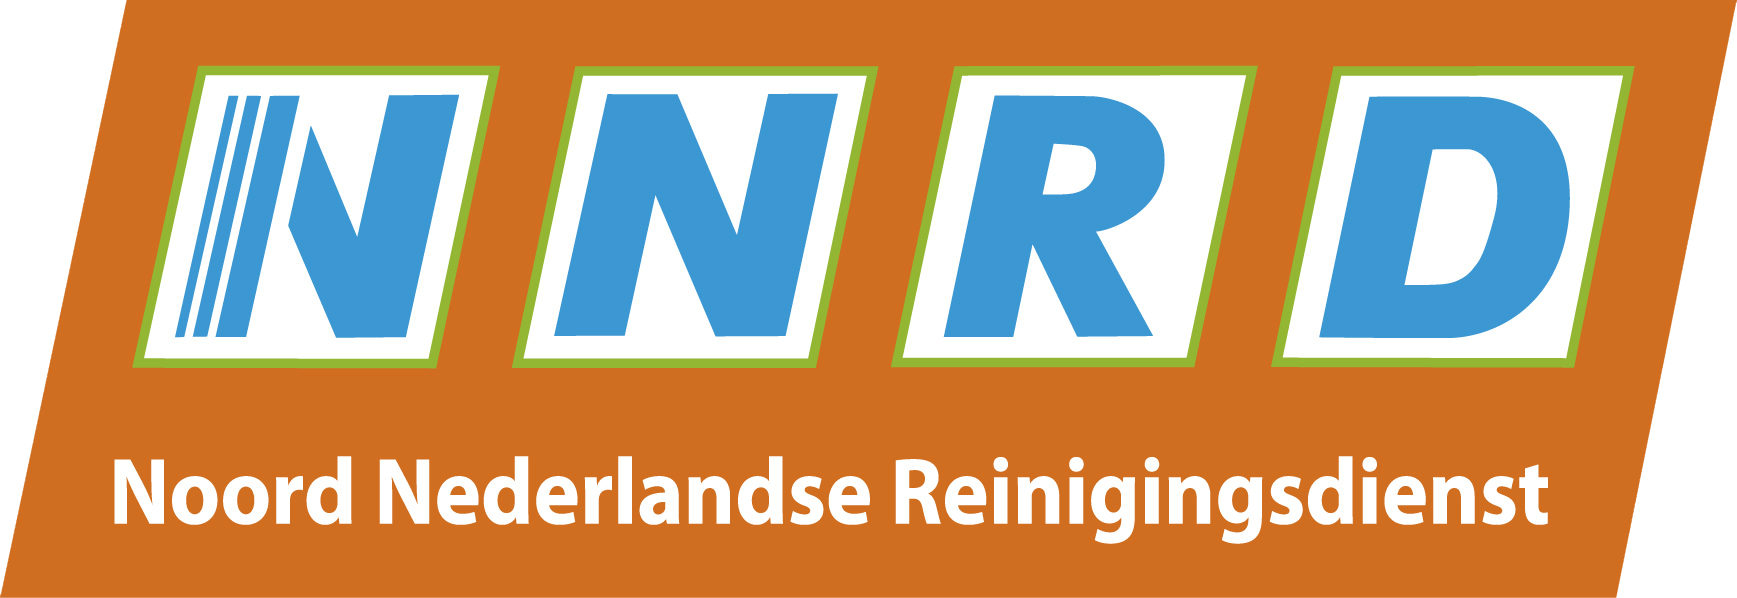 NNRD-logo